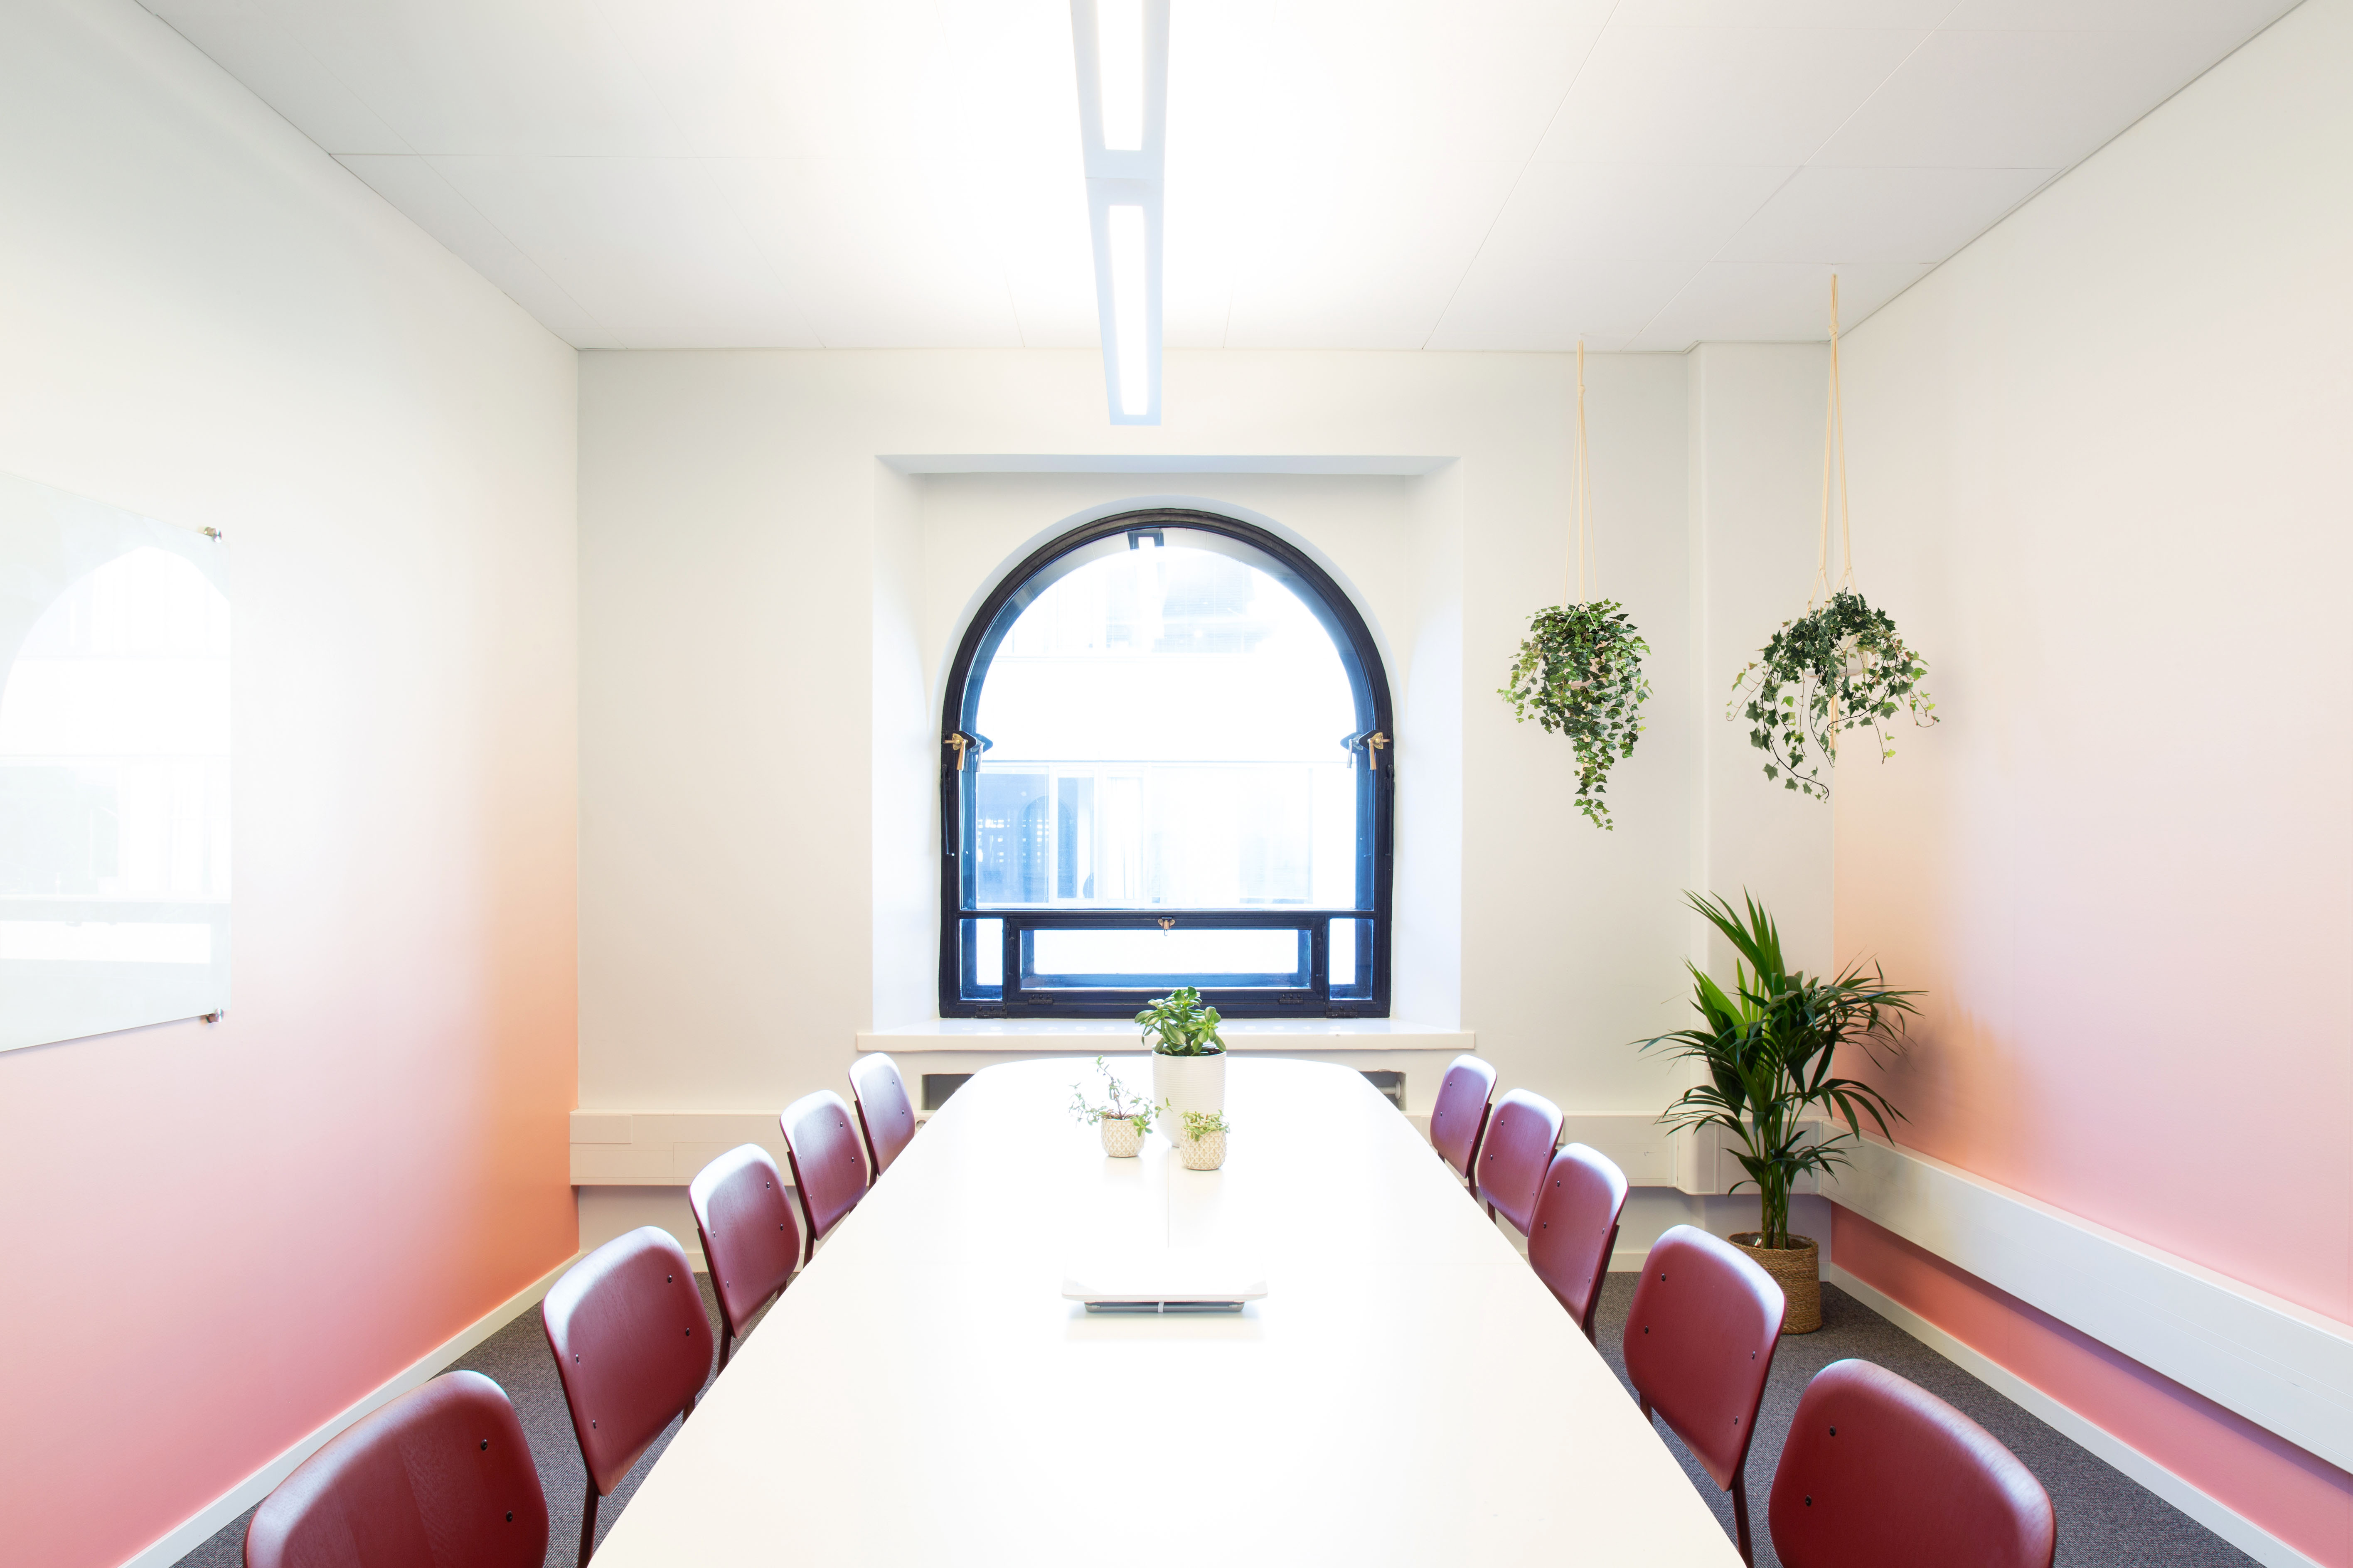 Netlight office meeting room gradient